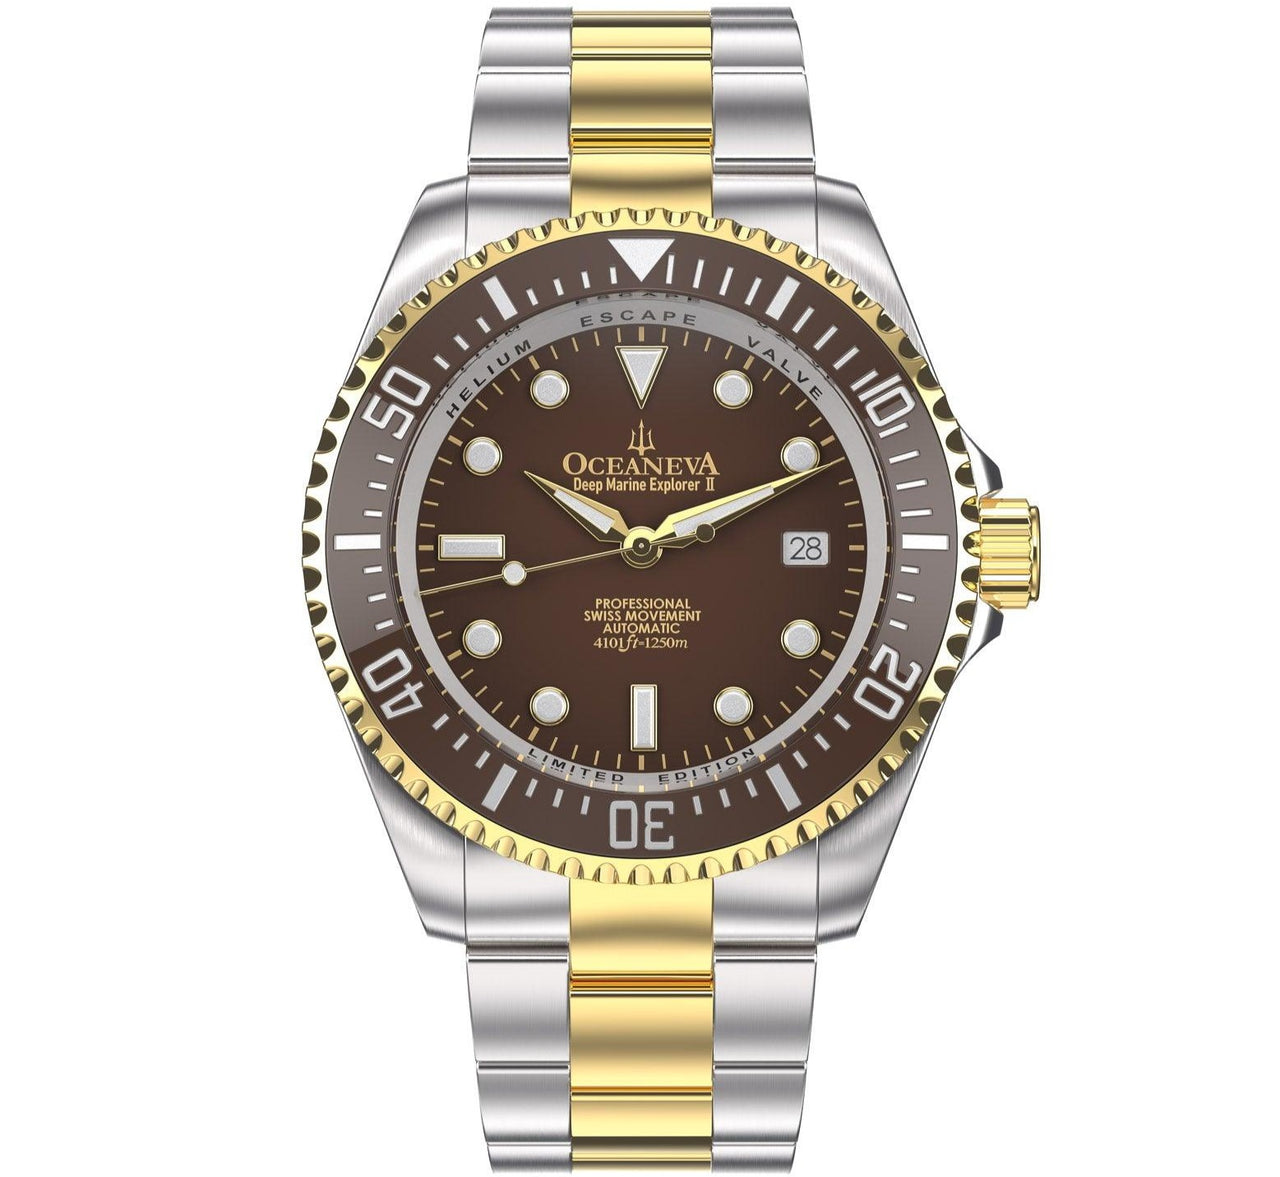 Oceaneva™ Men's Deep Marine Explorer II 1250M Pro Diver Watch Brown Yellow Gold